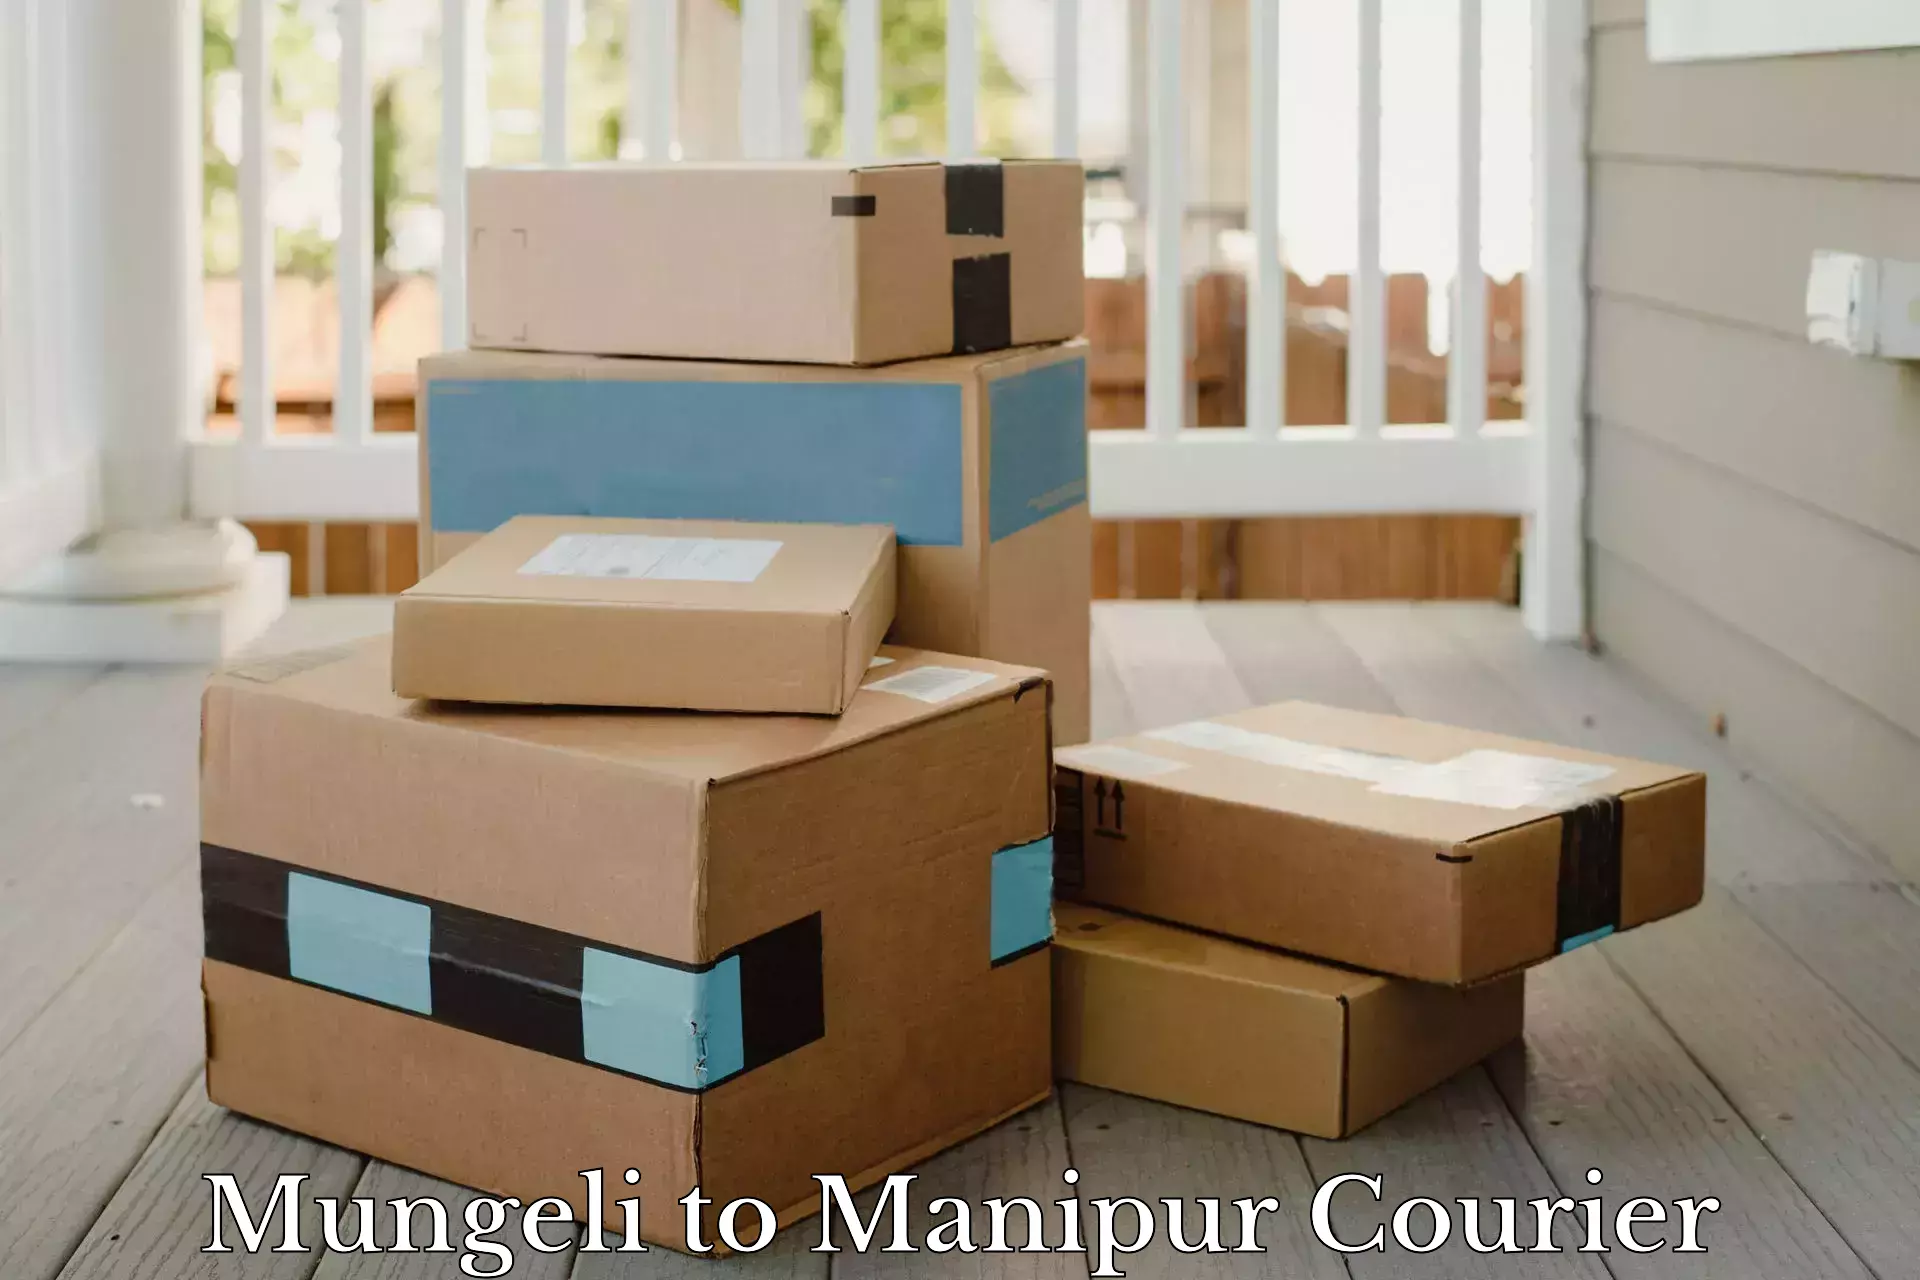 Urban courier service Mungeli to Manipur